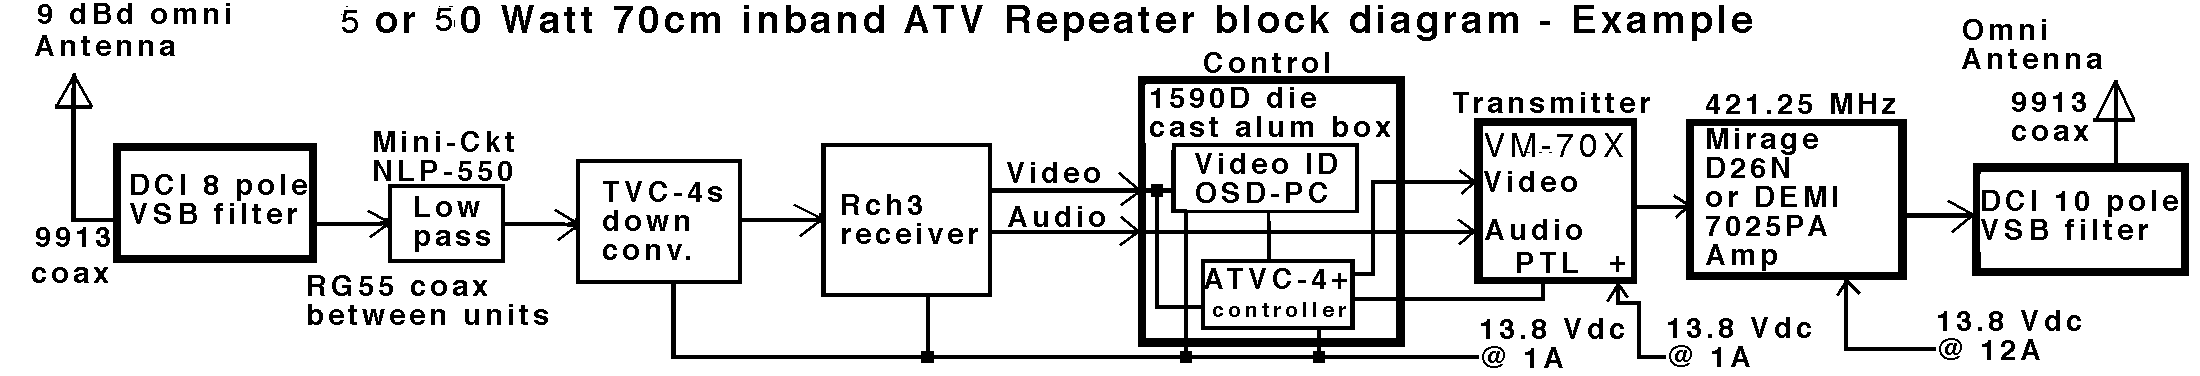 ATV Repeater block diagram